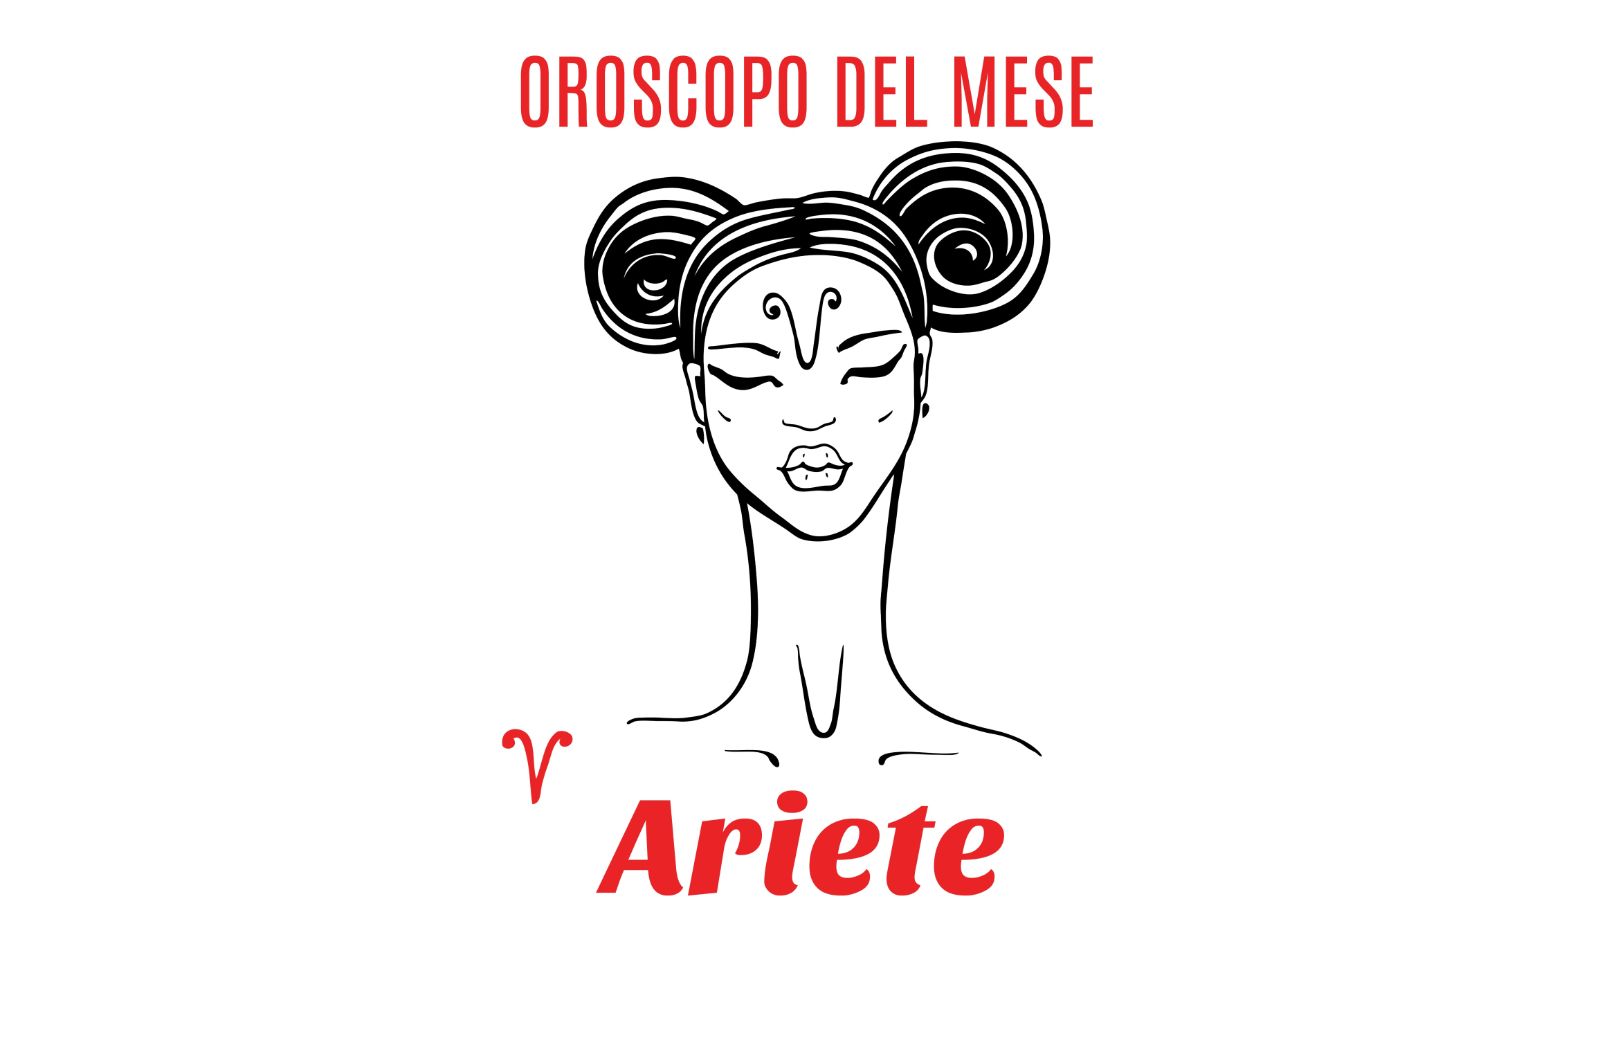 Oroscopo del mese: Ariete - luglio 2020